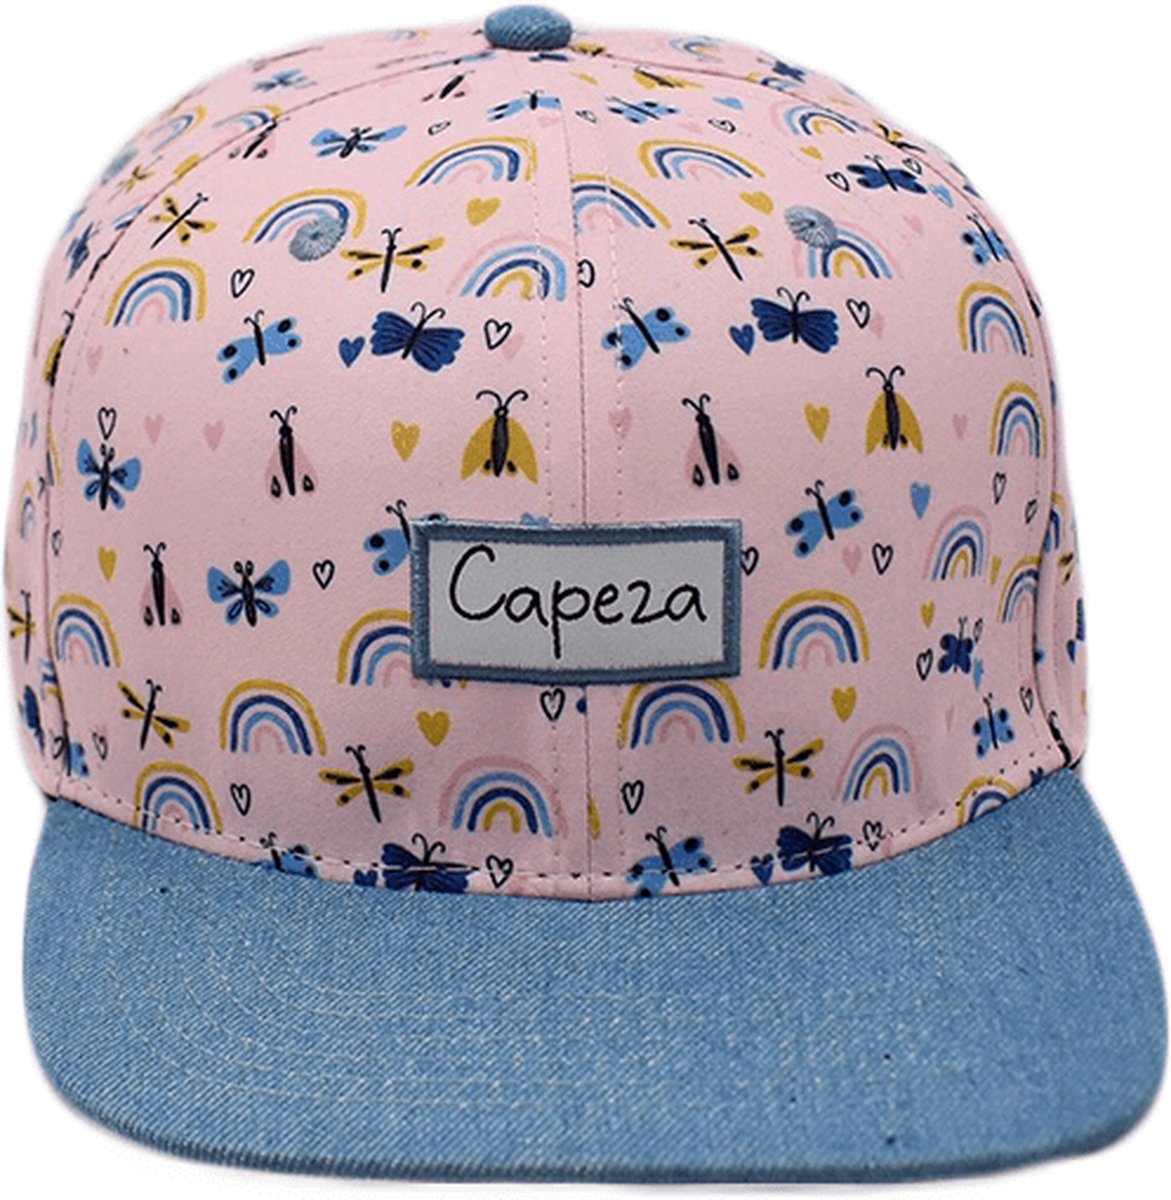 Capeza - Emily - Kind 6 jaar en hoger - Snapback kind - Kinderpet - Zomerpet - Pet voor kinderen - snapback cap